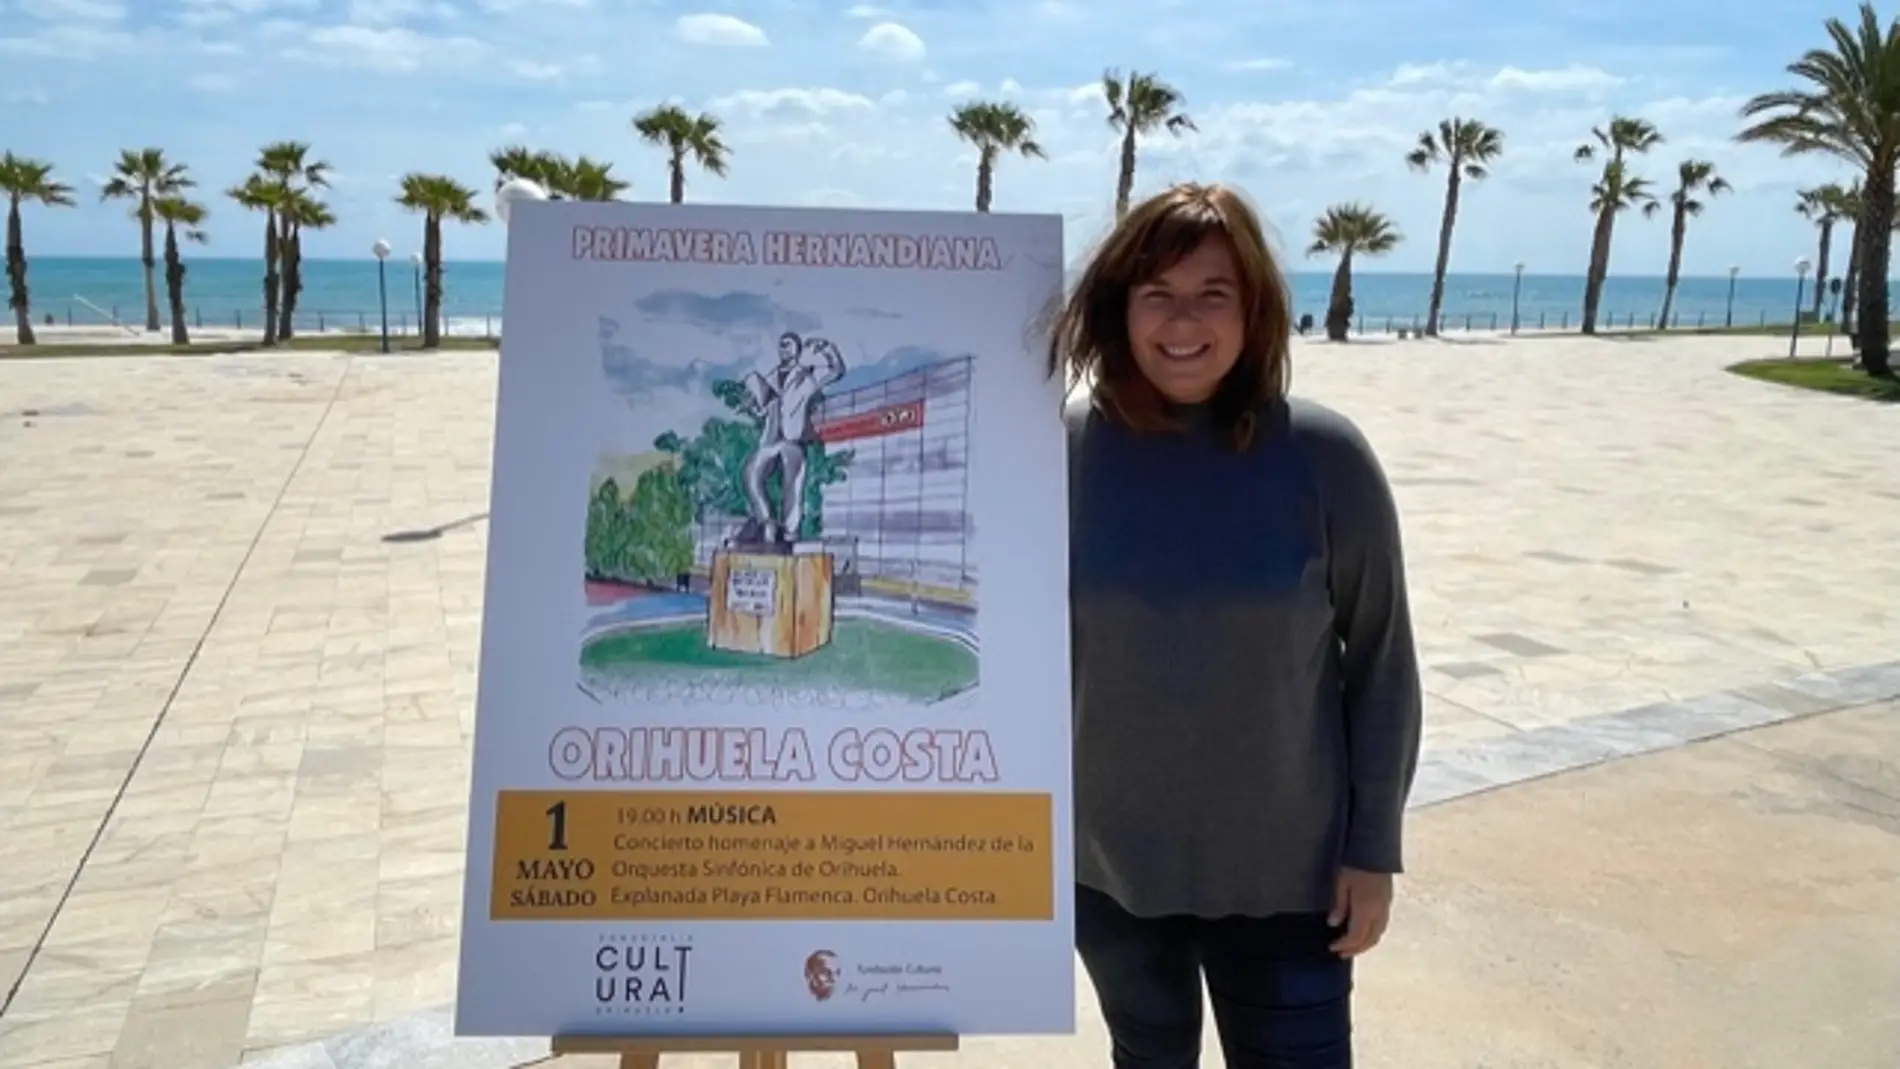 El sábado 1 de mayo la Orquesta Sinfónica de Orihuela (OSO) ofrecerá un concierto en homenaje al poeta Miguel Hernández en la explanada de Playa Flamenca, en Orihuela Costa 